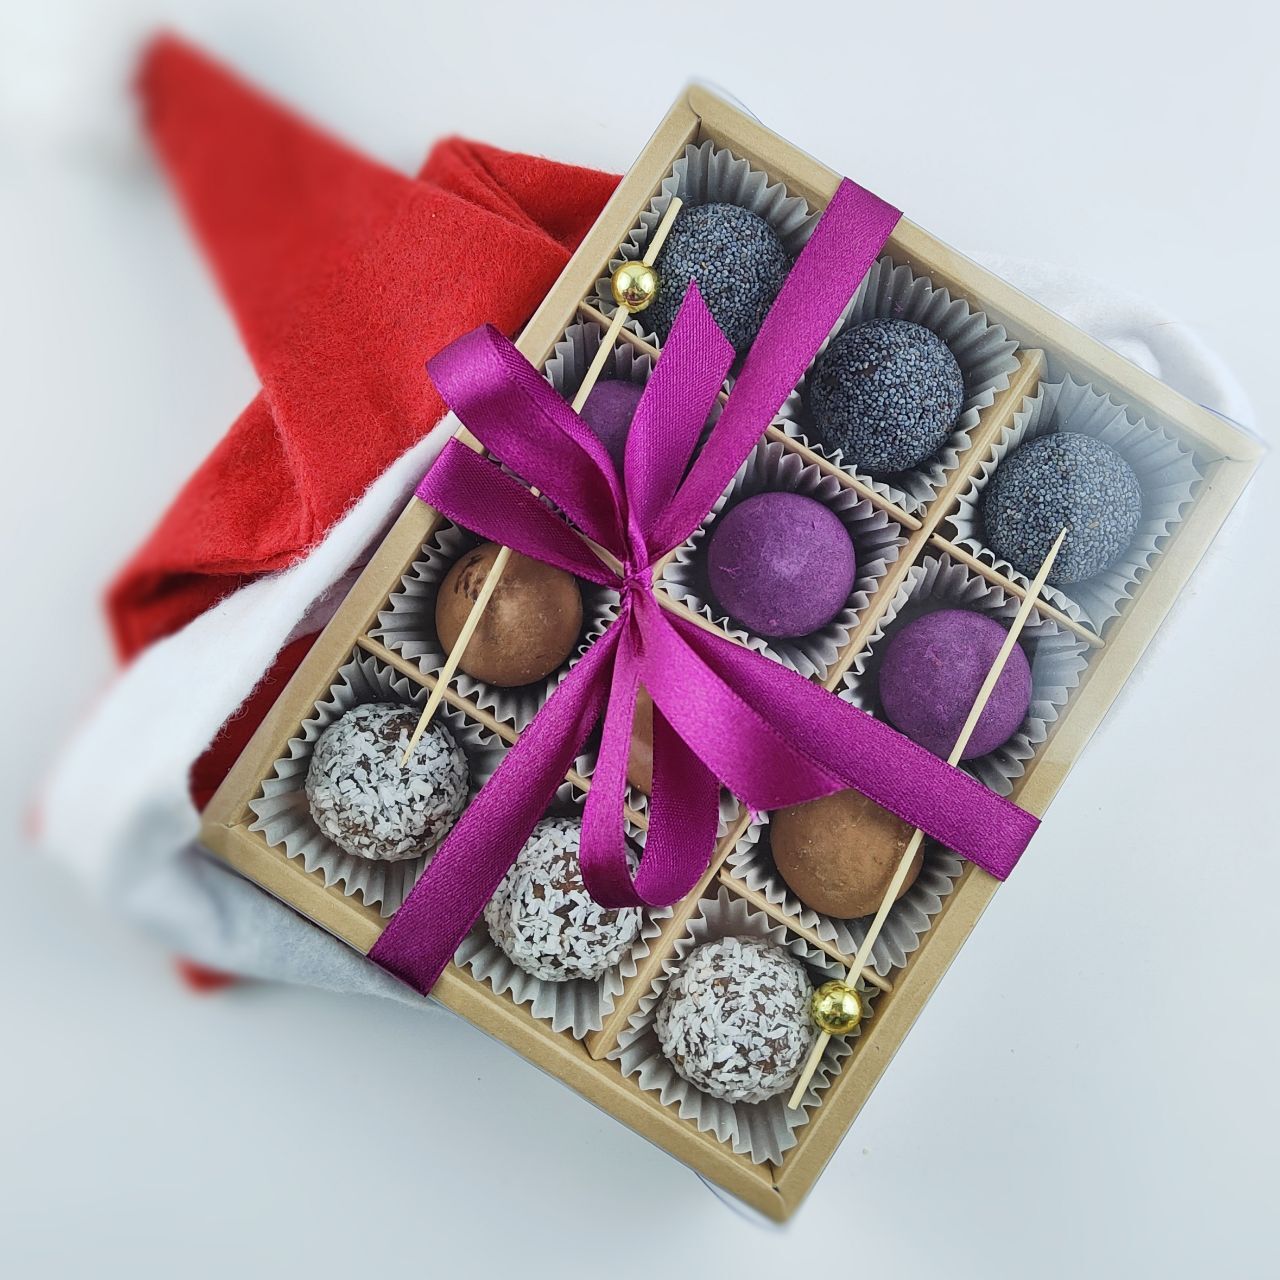 Как сделать и оформить подарки из конфет своими руками для кого угодно